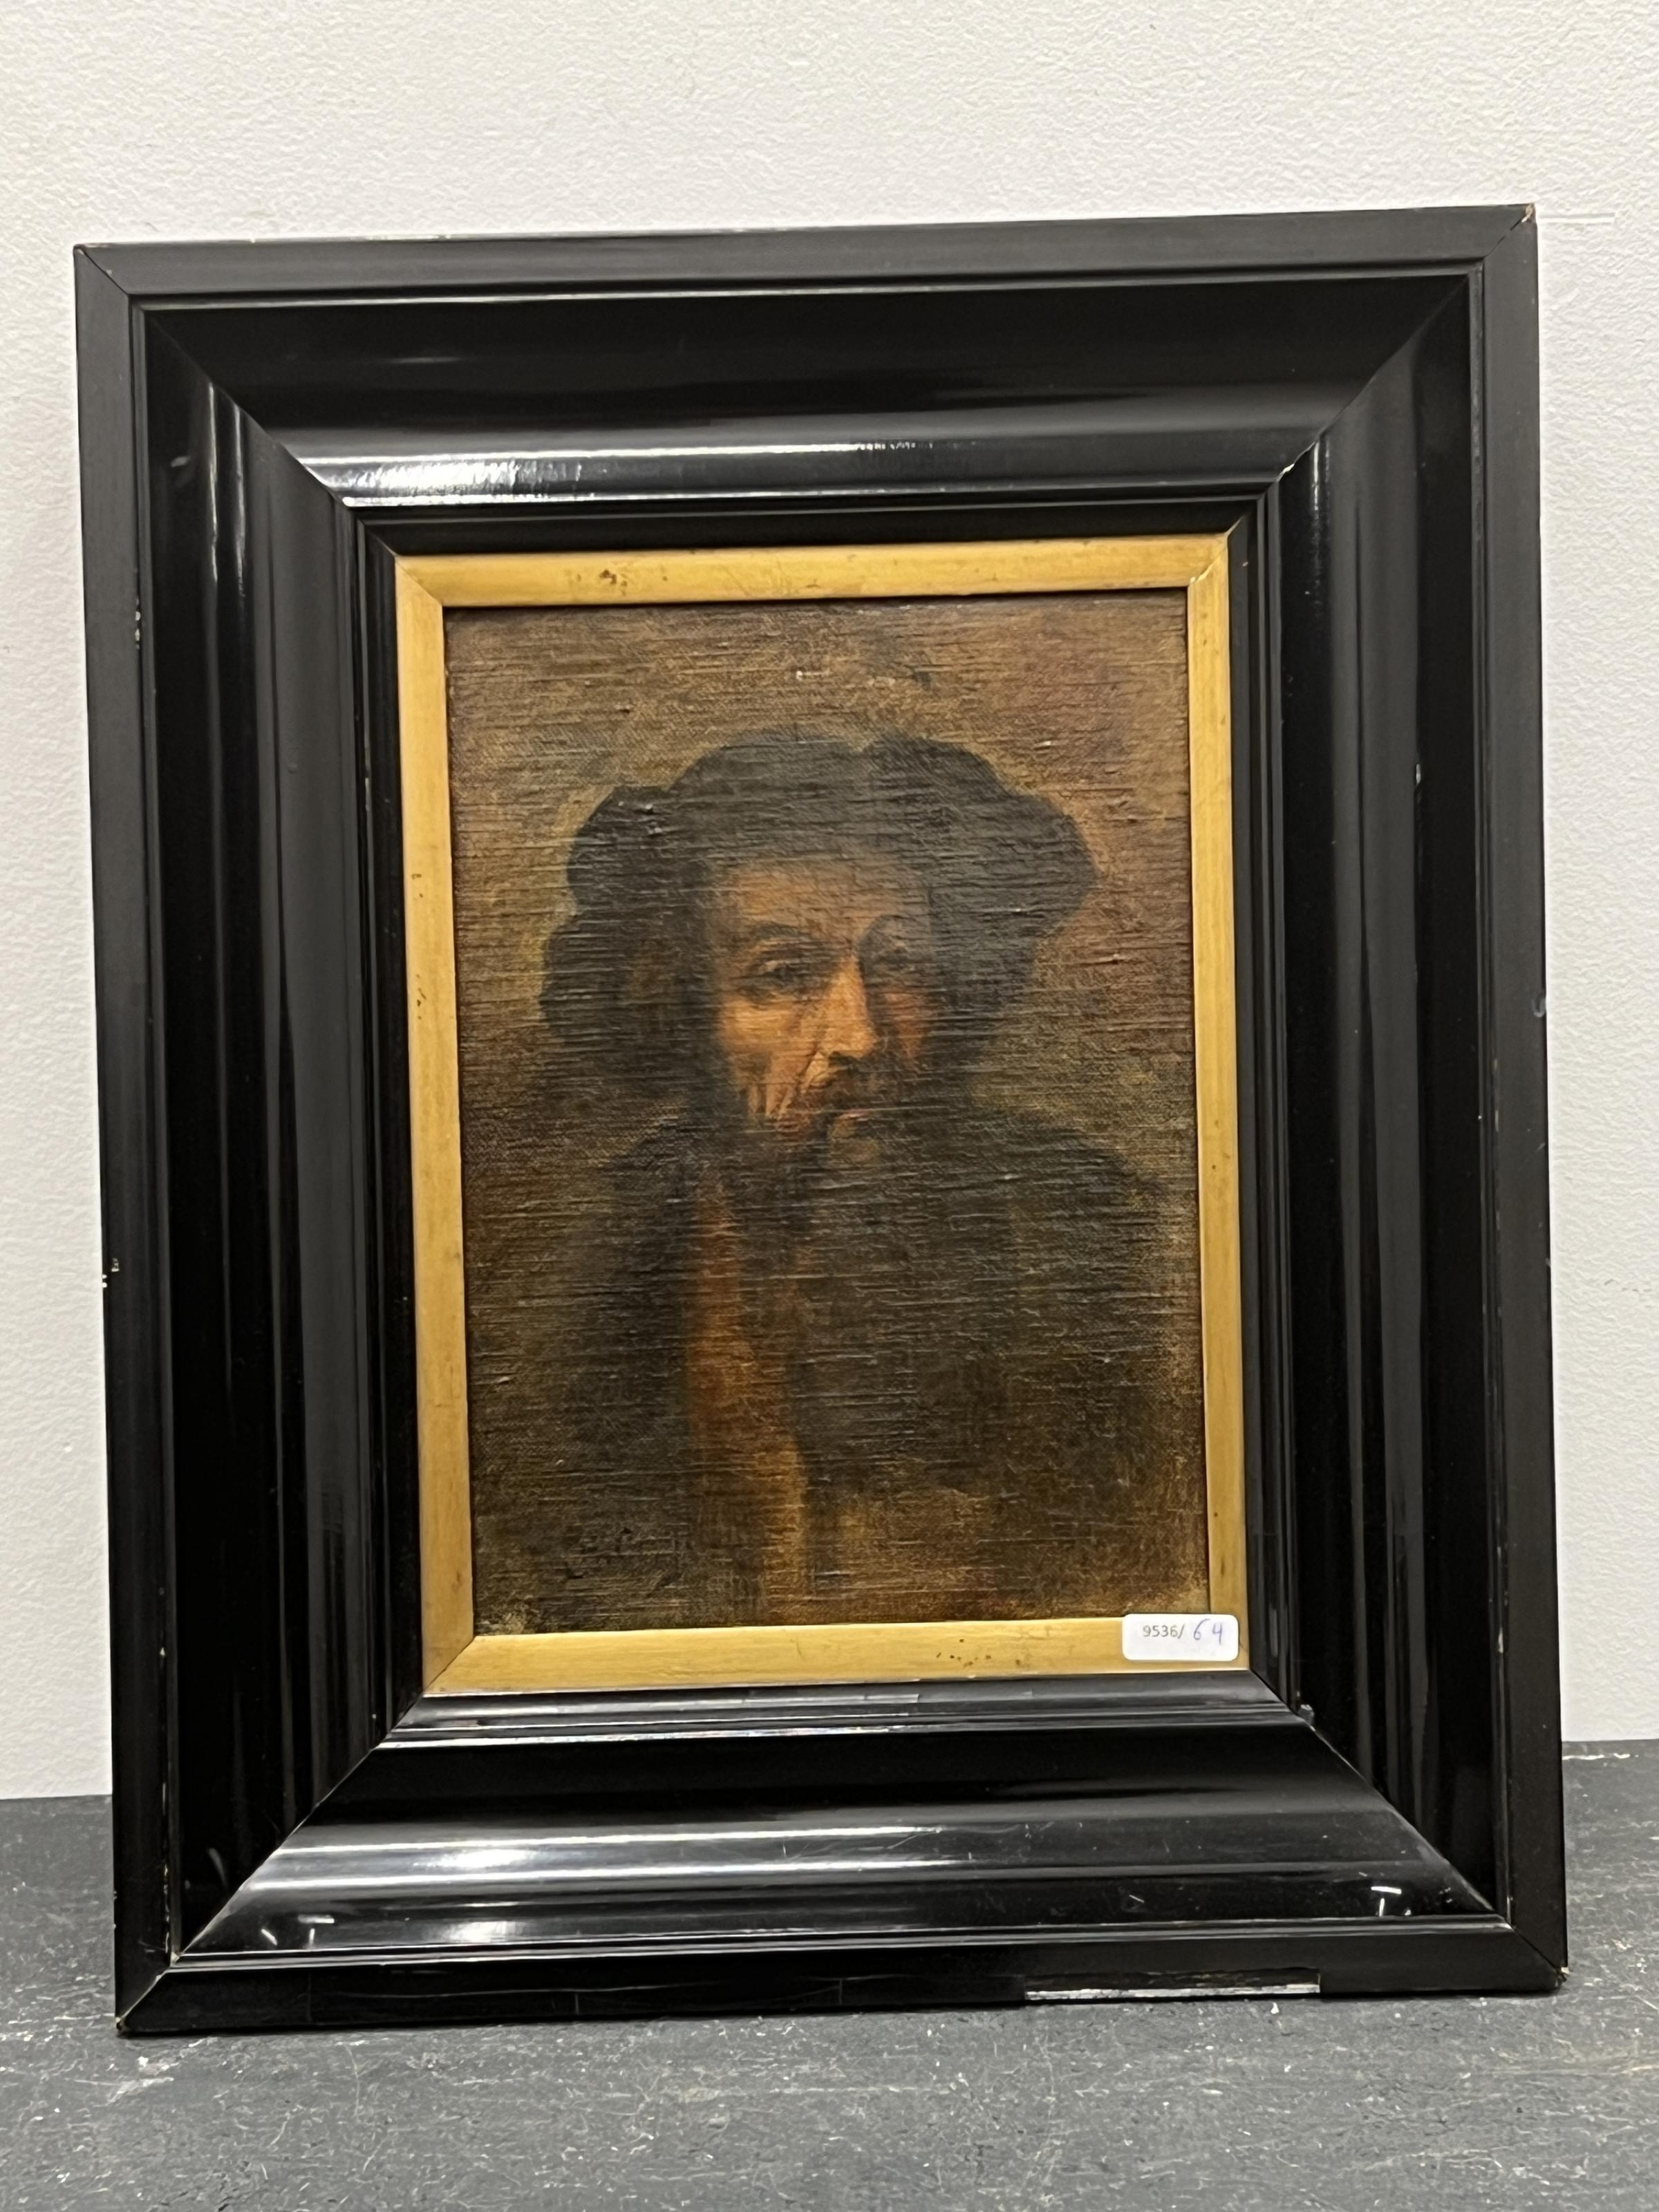 L'homme à la barbe by Rembrandt van Rijn, 19è